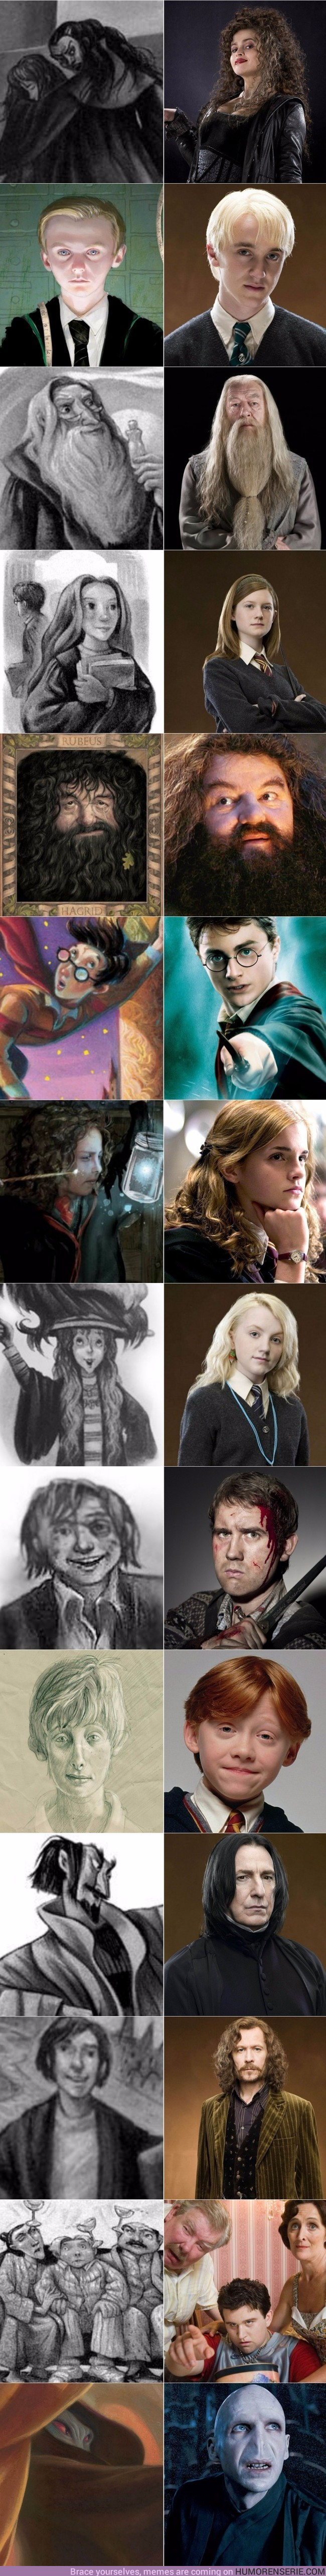 14942 - Así serían los personajes de Harry Potter si las películas fuesen fieles al libro